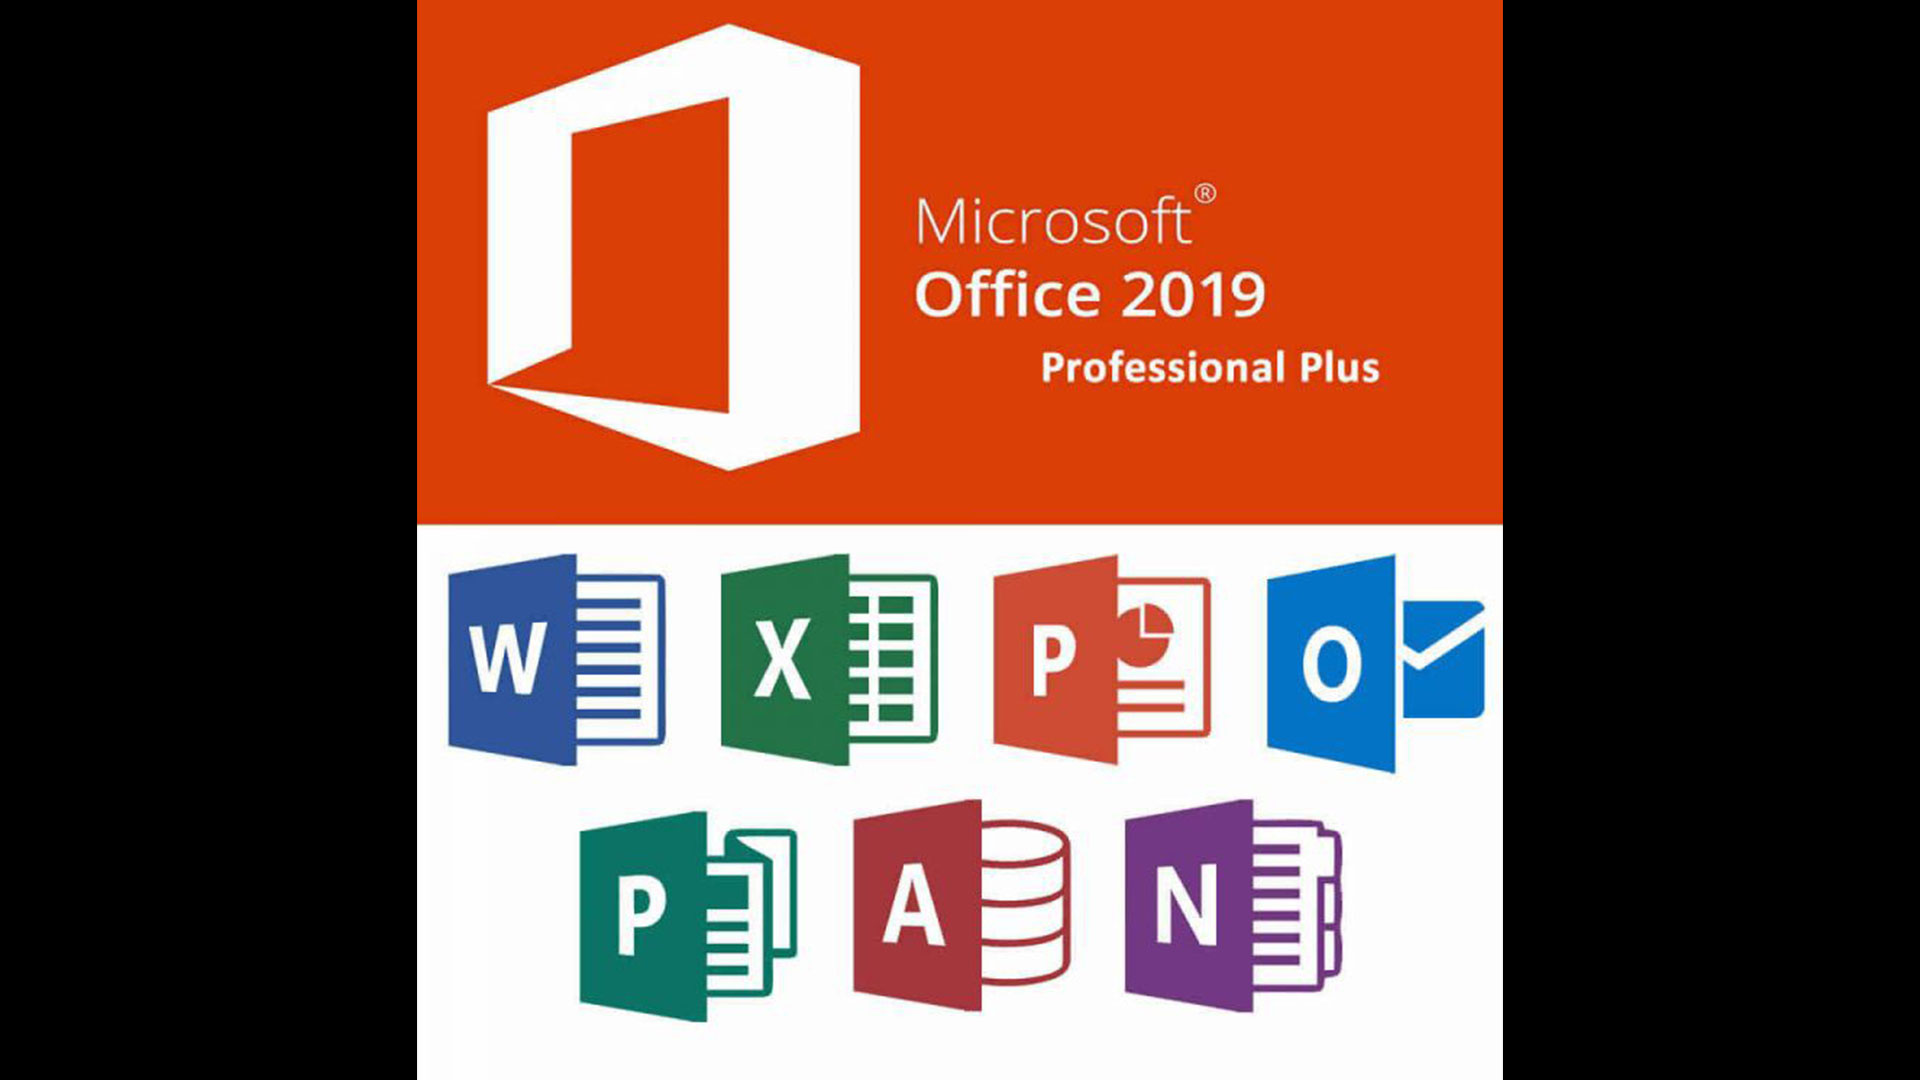 Tải Microsoft Office 2019 Professional Plus bản Full không hướng dẫn giải nén – [Link GG Drive]